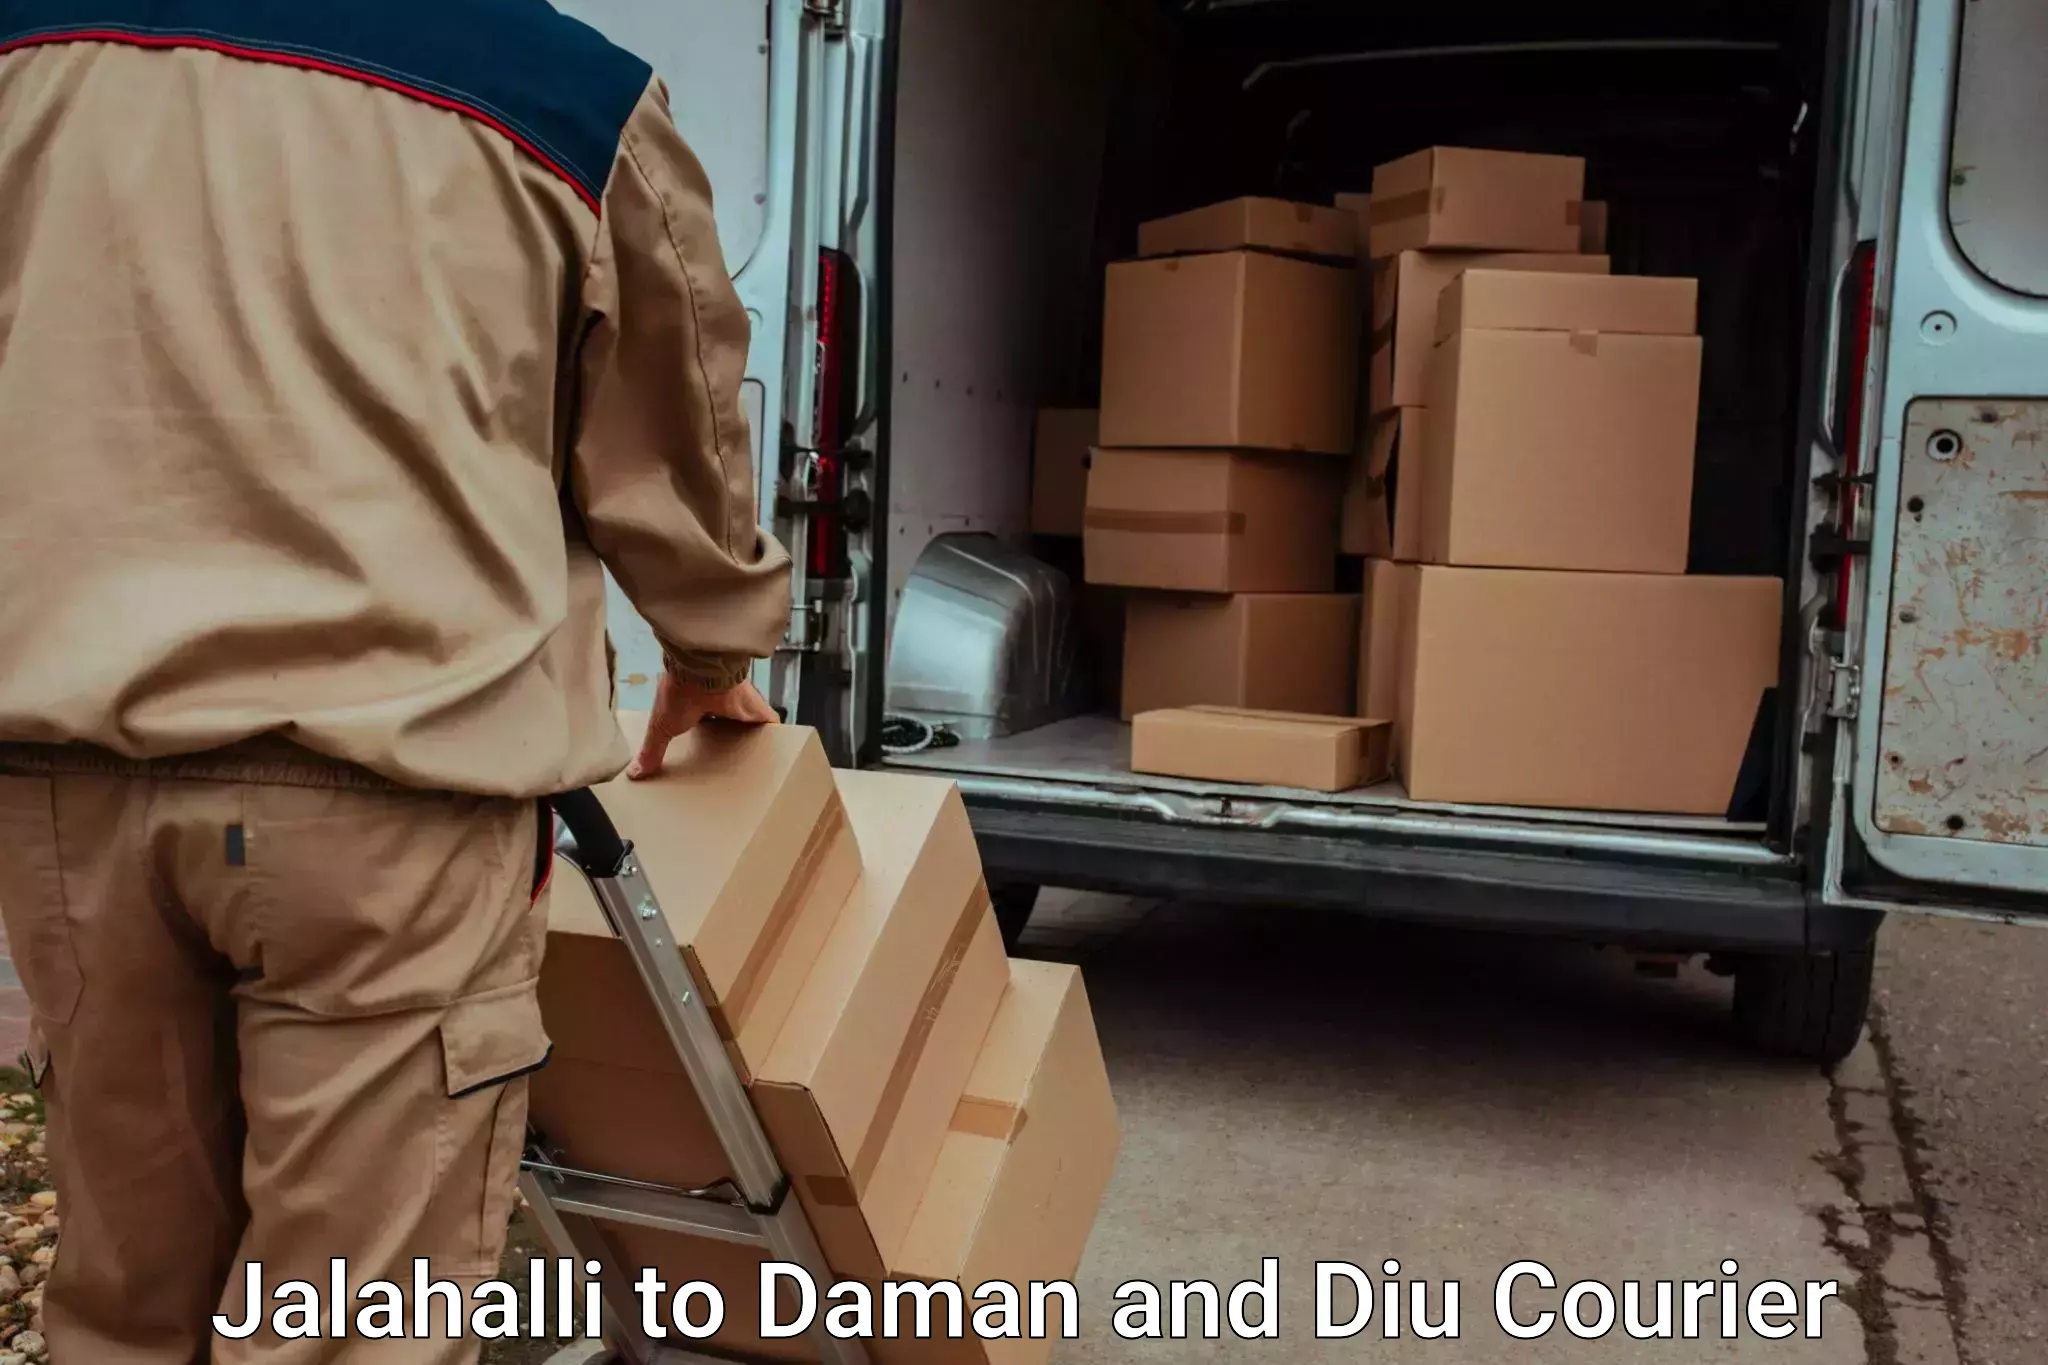 Moving and packing experts Jalahalli to Diu